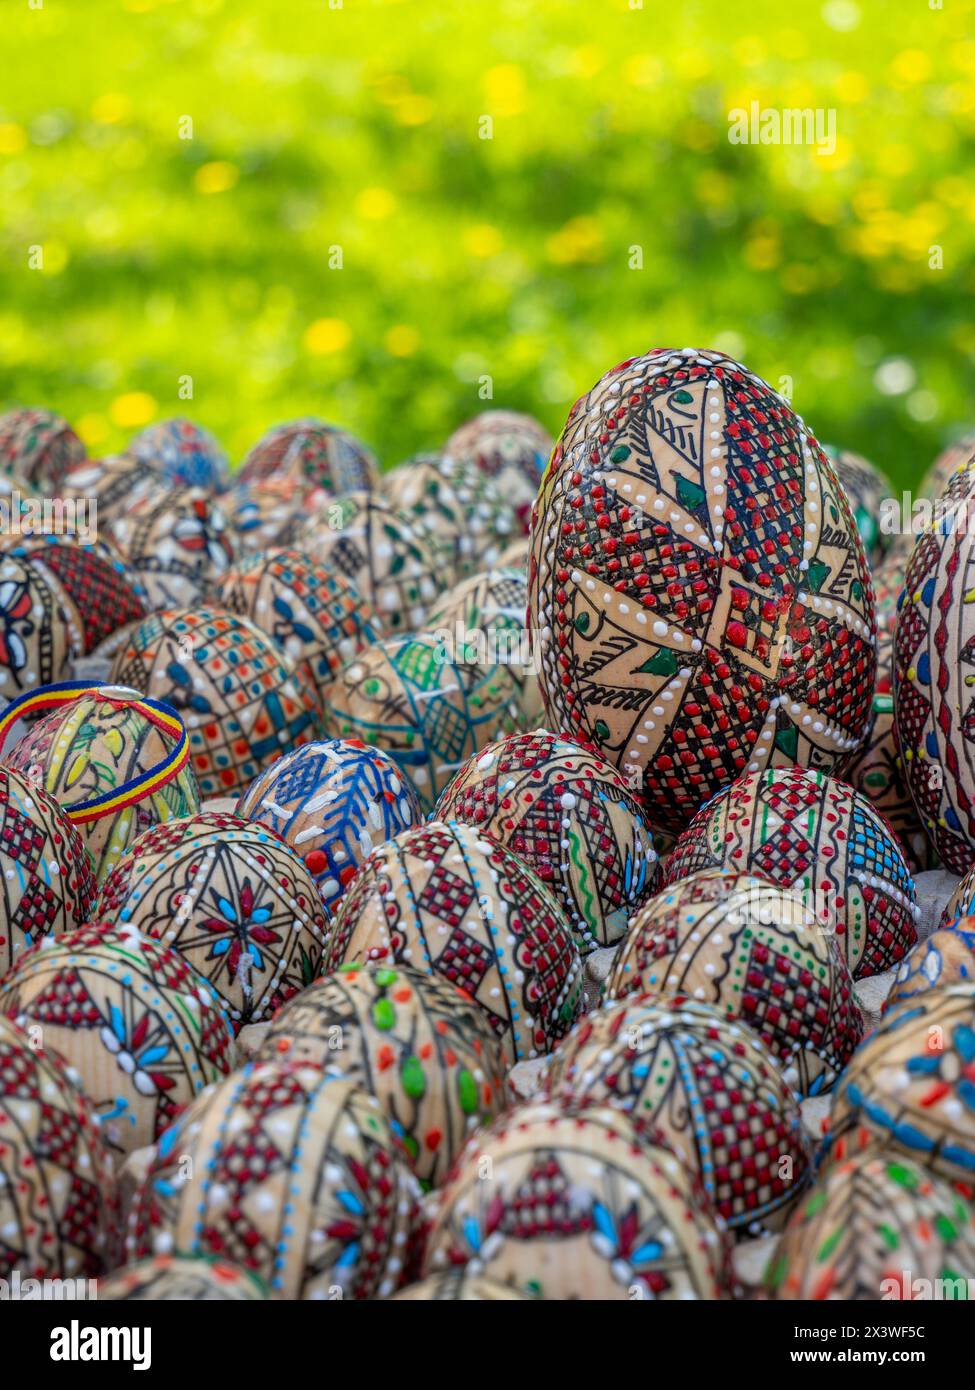 groupe d'oeufs de pâques orthodoxes roumains décorés exposés Banque D'Images